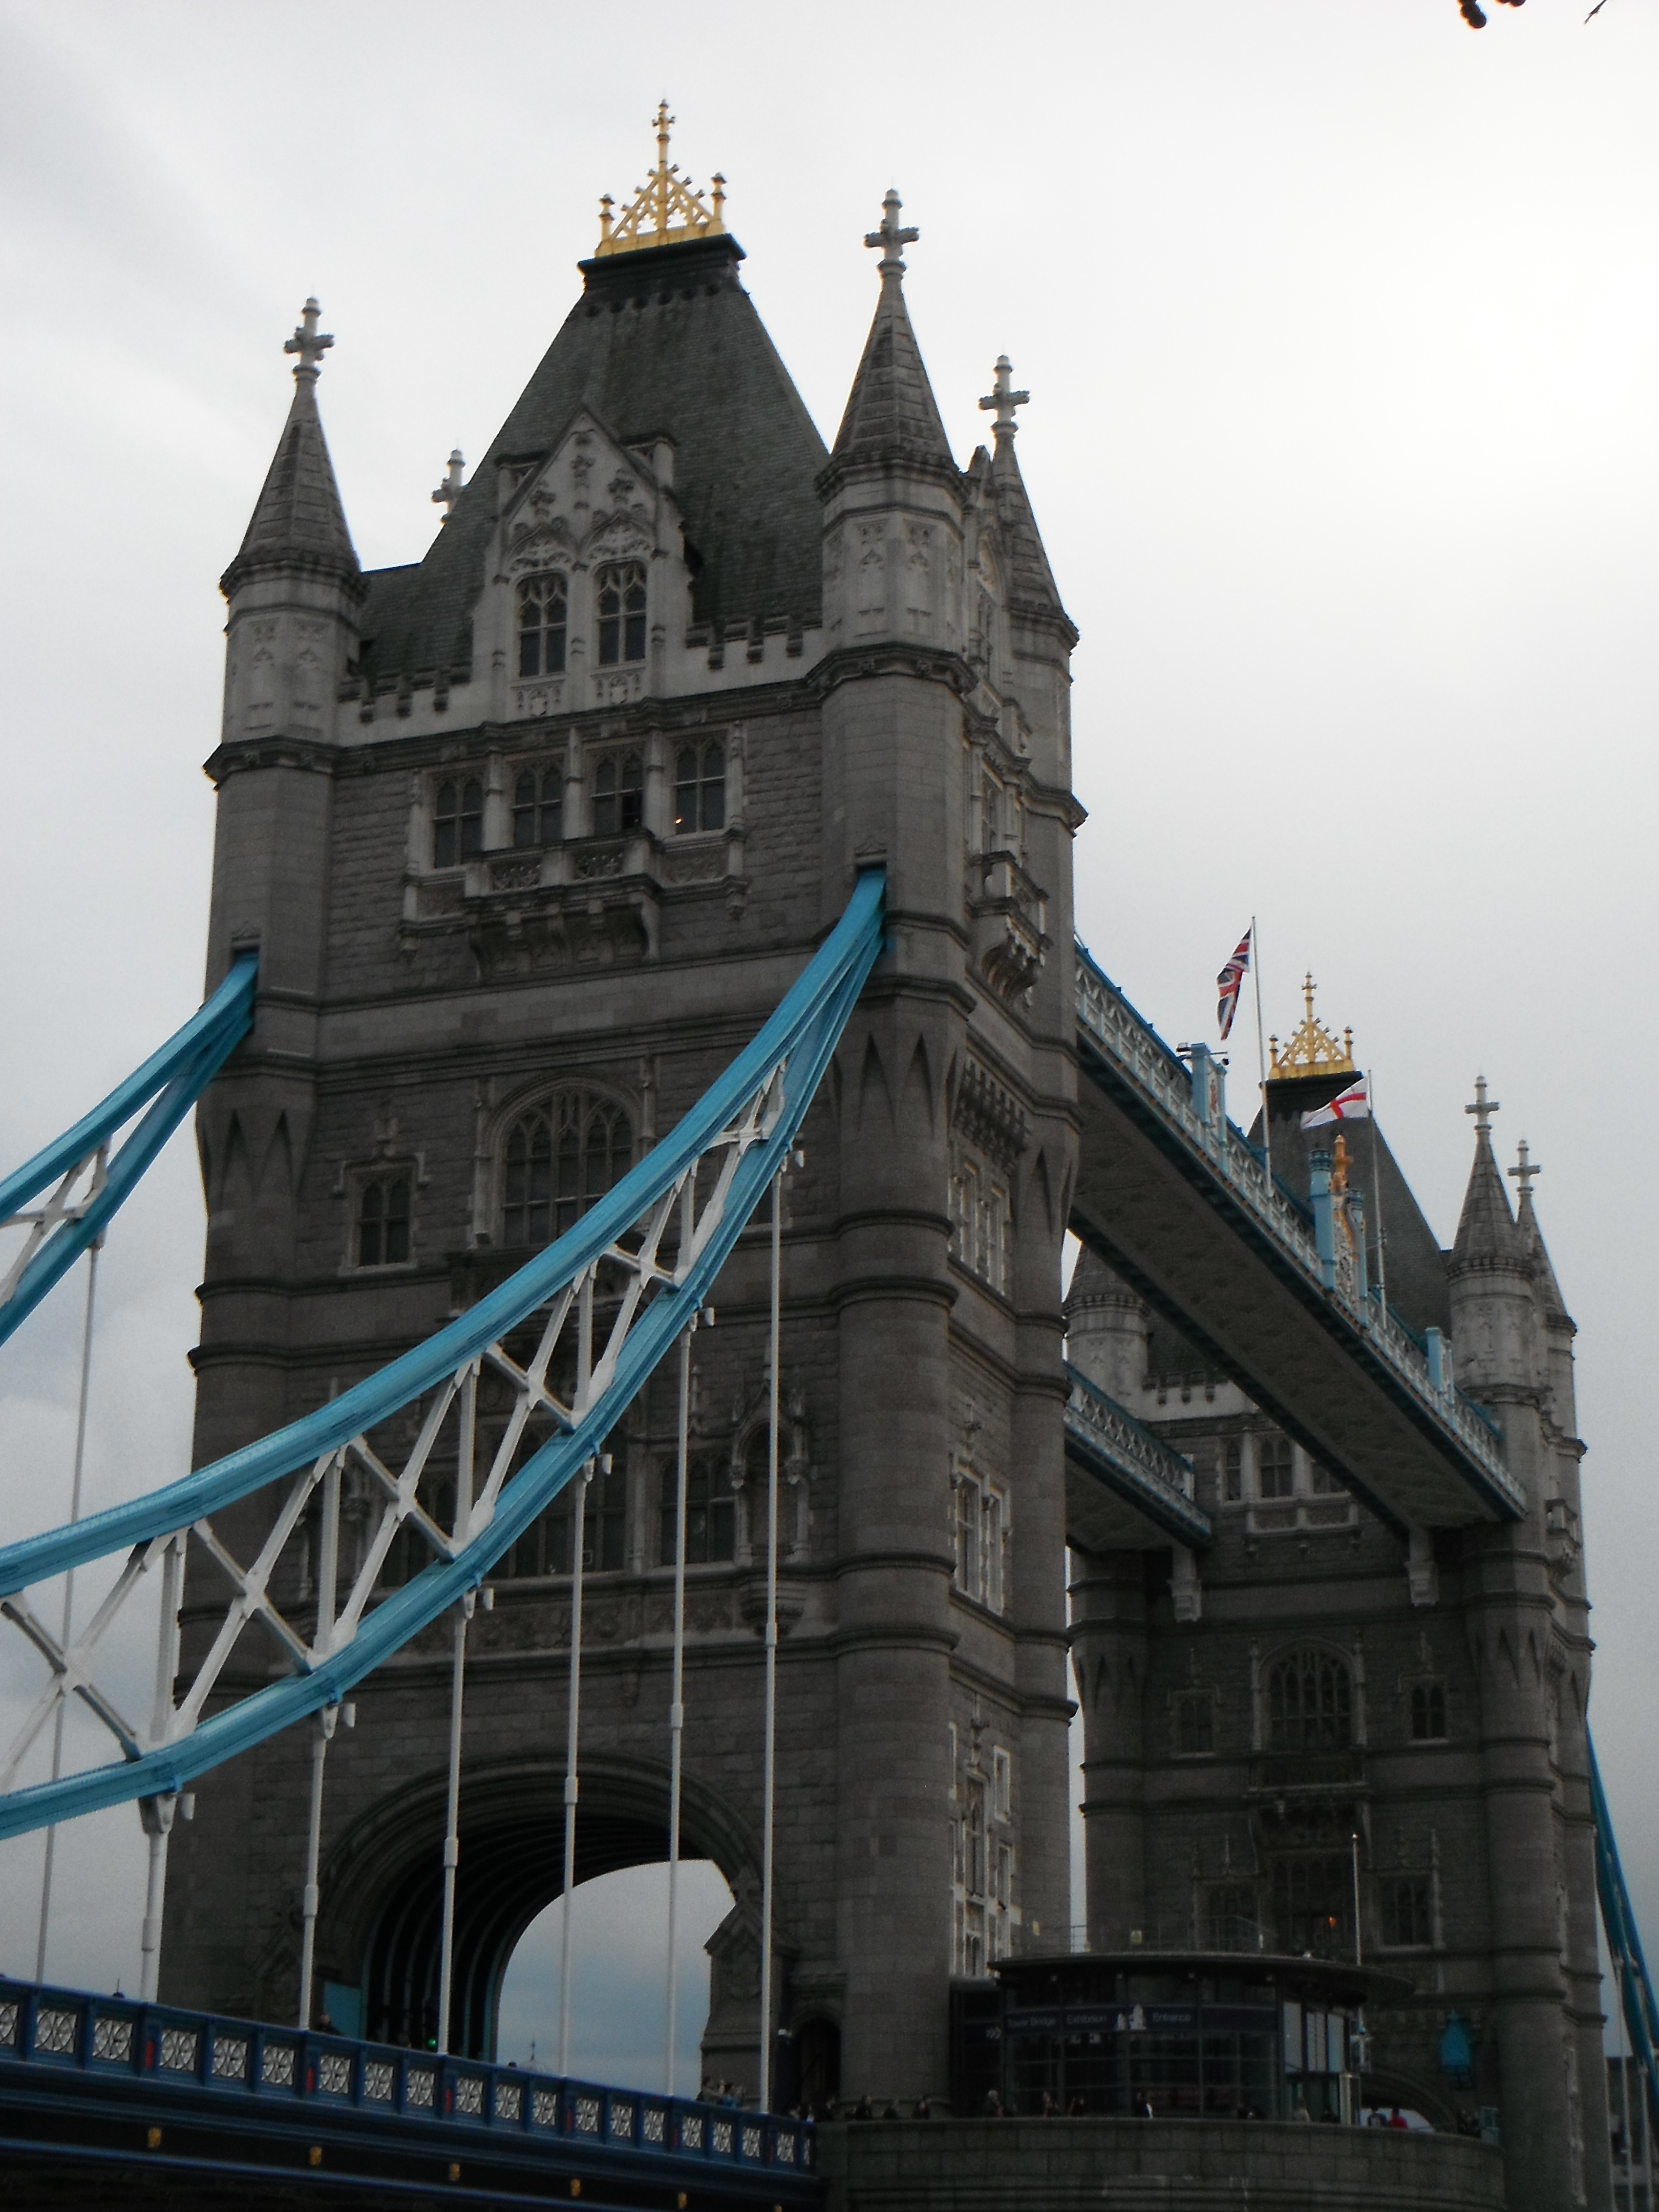  Photo taken by me – Tower Bridge London 